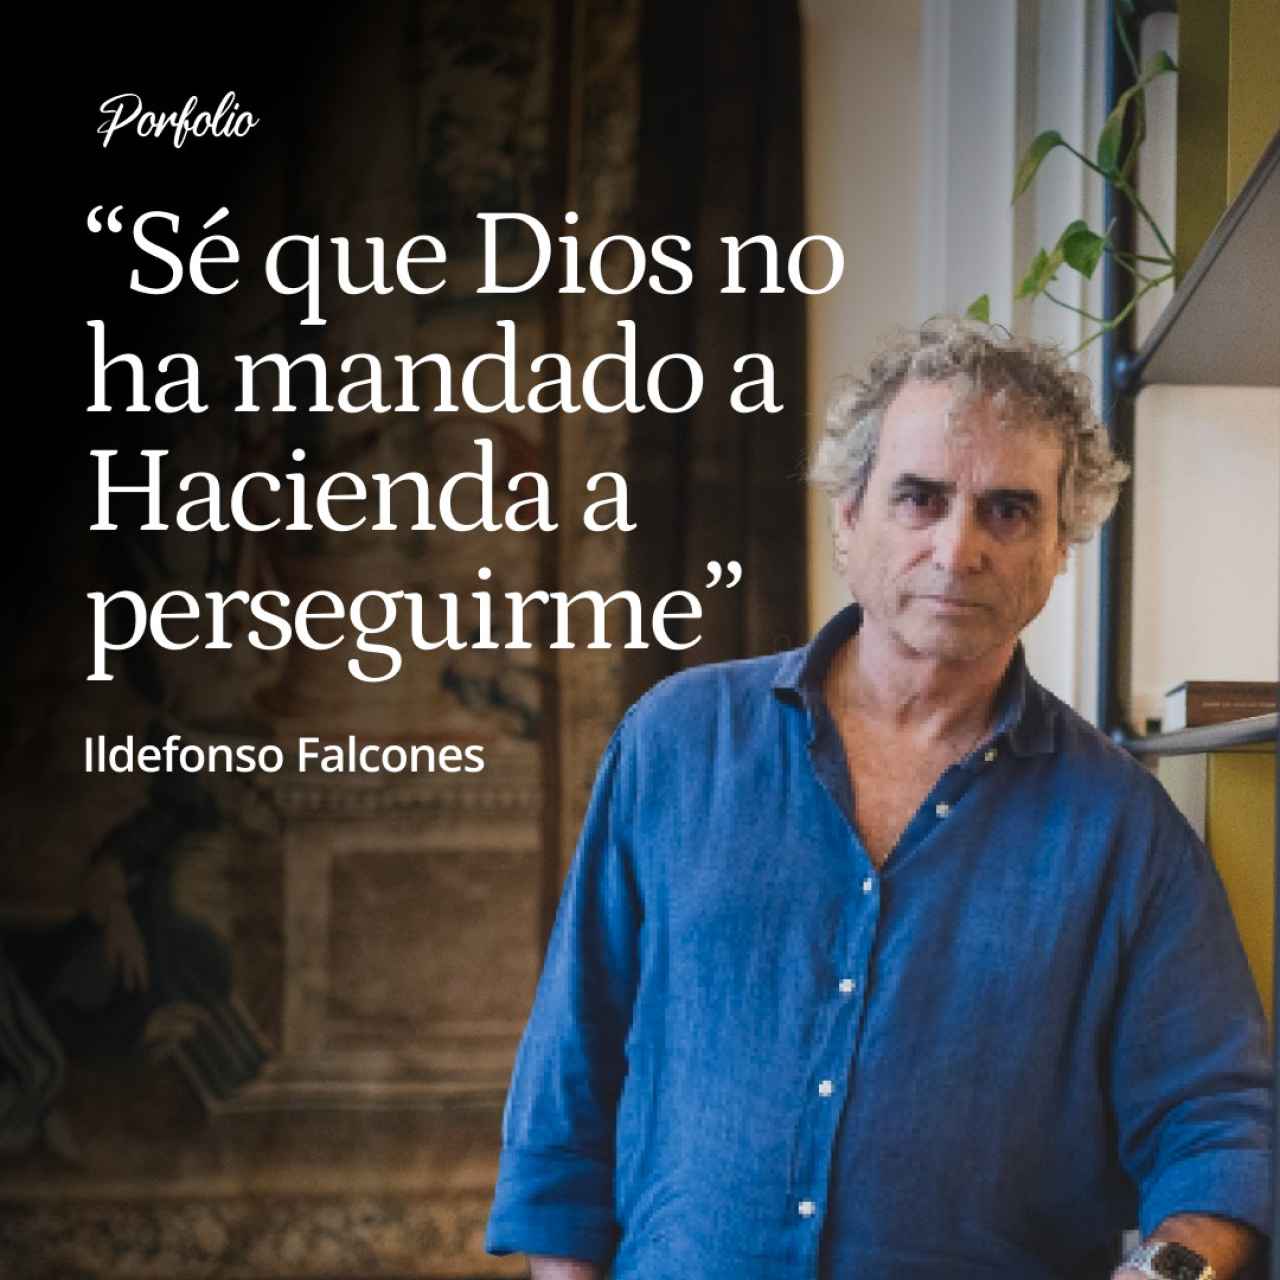 Ildefonso Falcones: "Sé que Dios No ha Mandado a Hacienda a Perseguirme, pero Confío en que Intervenga en mi Enfermedad"